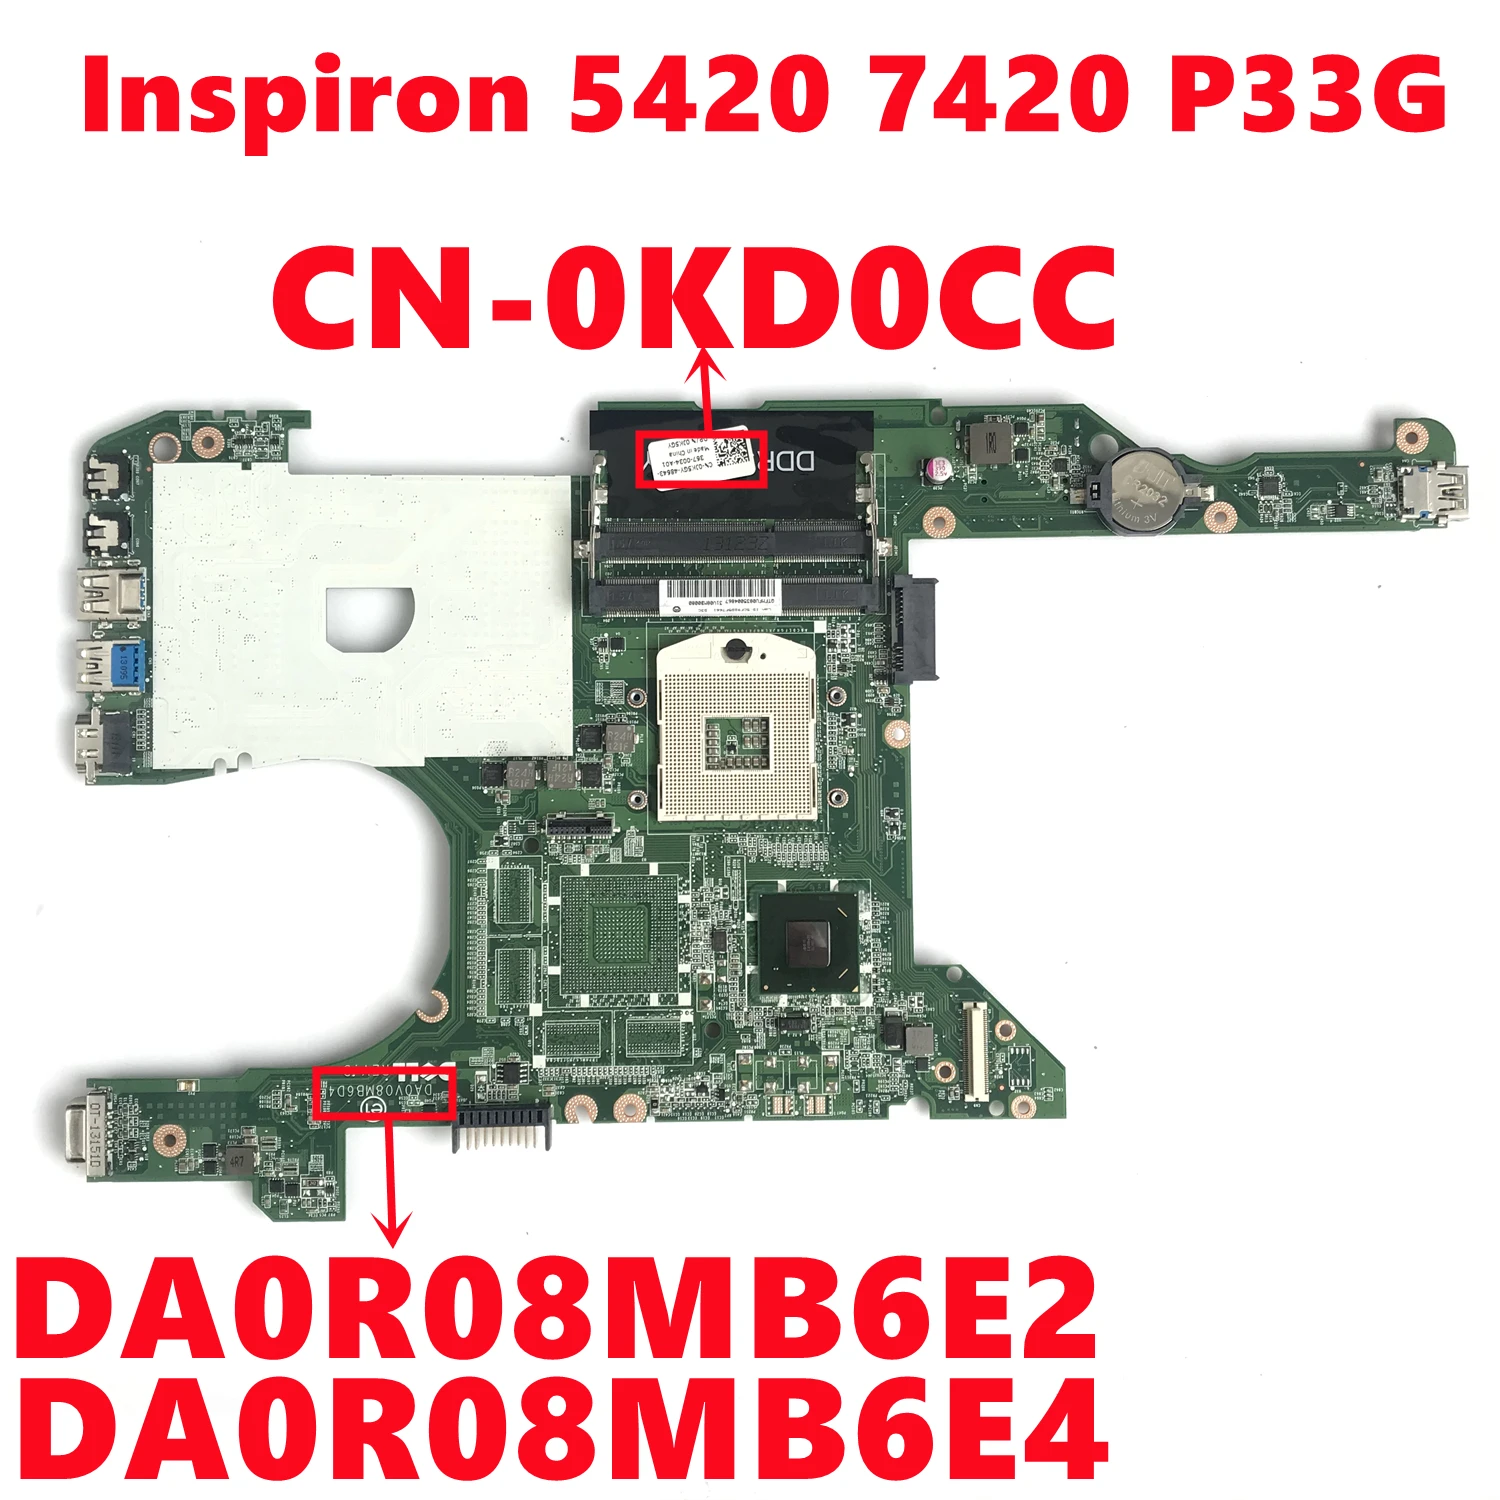 CN-0KD0CC 0KD0CC KD0CC для dell Inspiron 5420 7420 P33G Материнская плата ноутбука DA0R08MB6E2 DA0R08MB6E4 SLJ8C DDR3